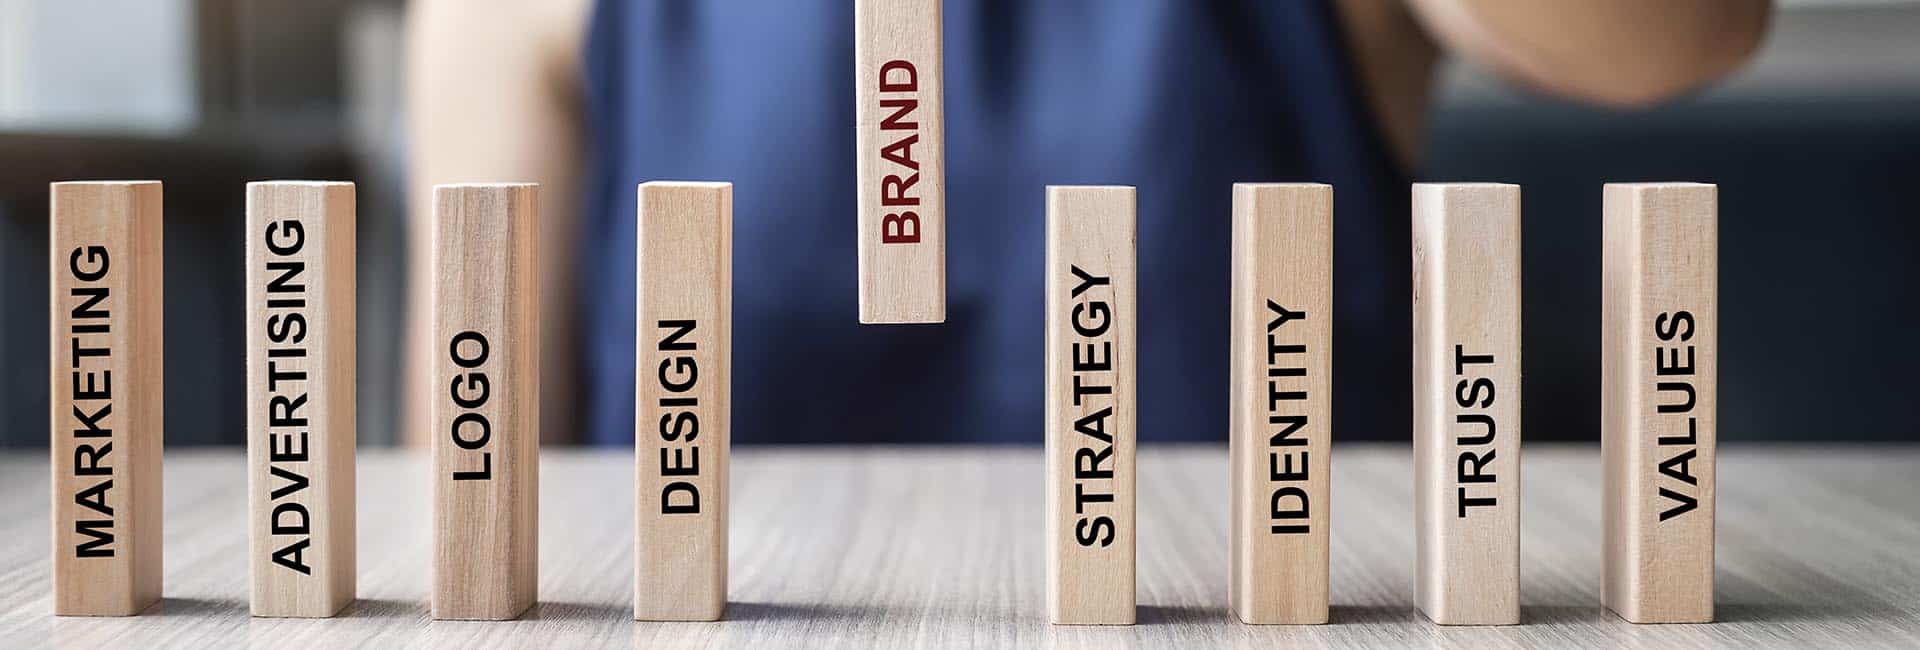 Estratégia Autoridade de Marca Branding